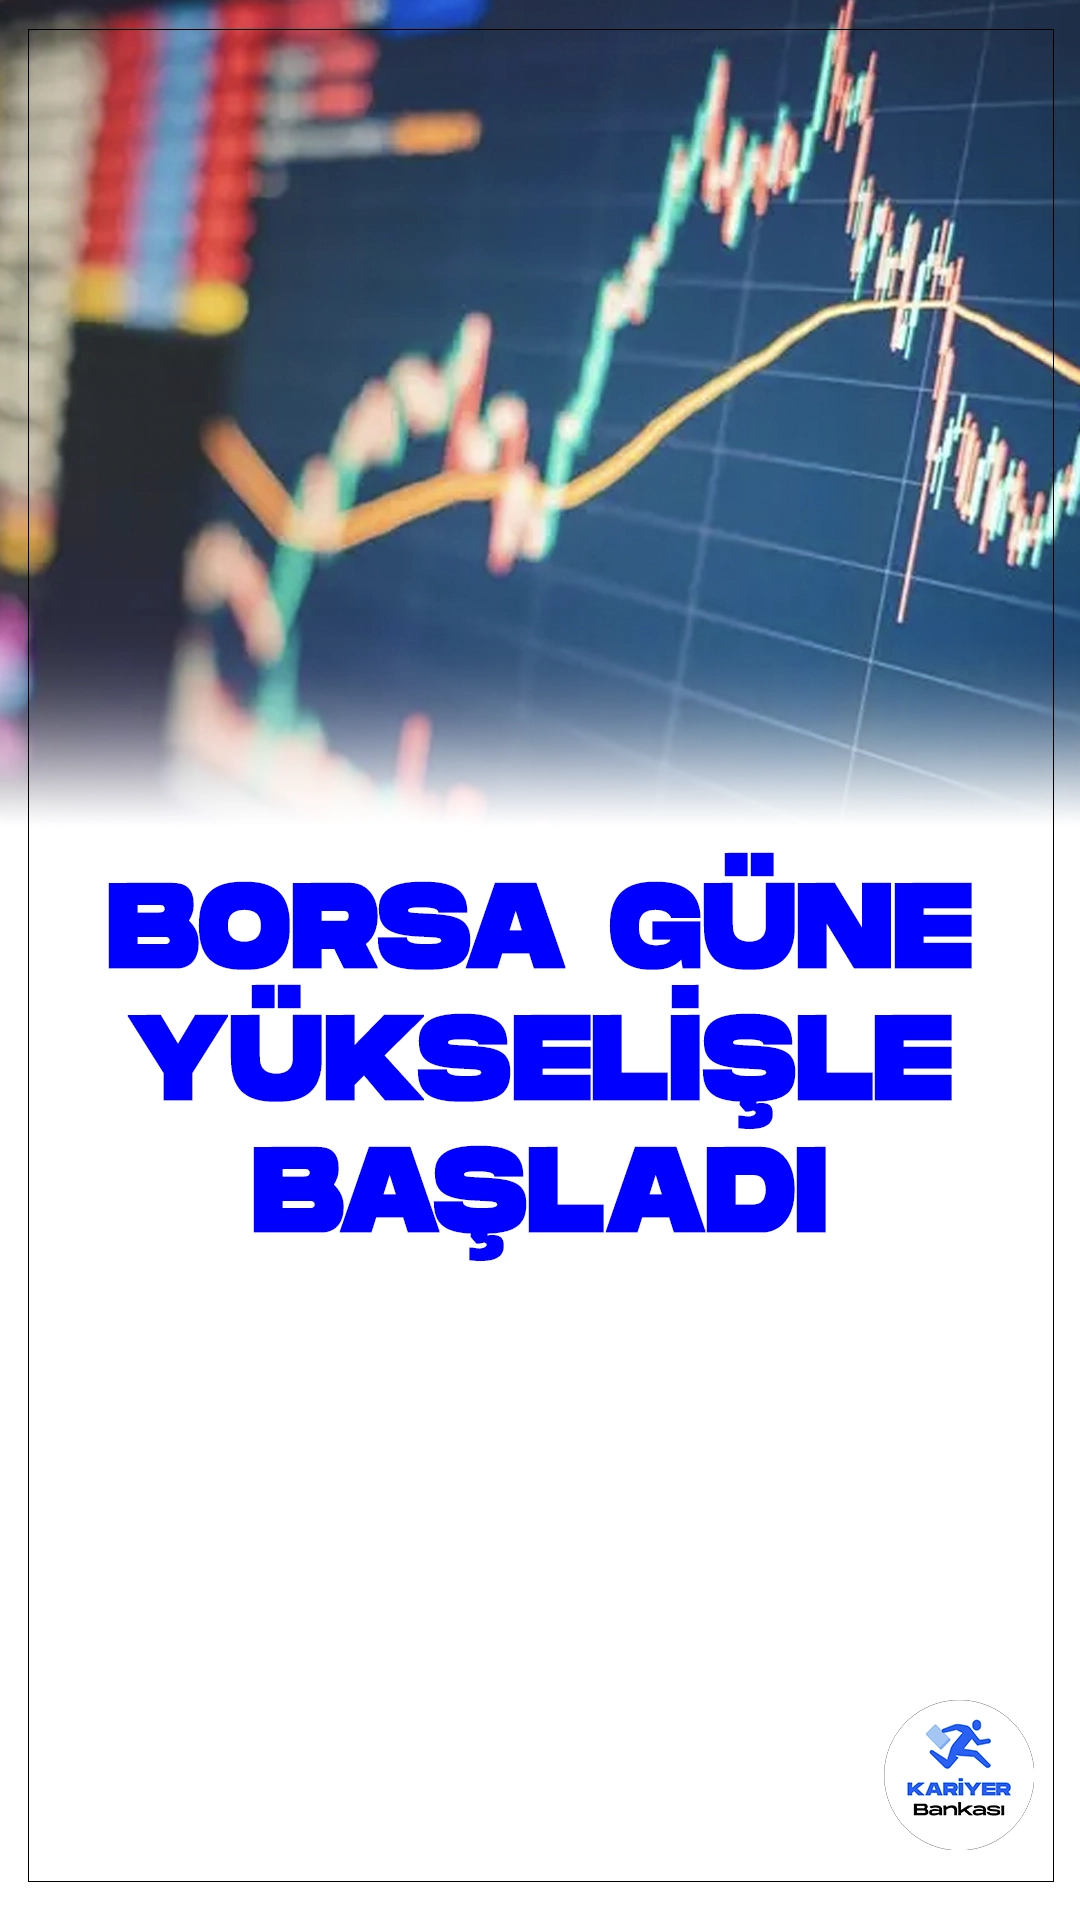 Borsa İstanbul'da Yükselişle Güne Başlandı.Borsa güne yükselişle başladı: BIST 100 endeksi, güne yüzde 0,36 yükselişle 9.564,85 puandan başladı.